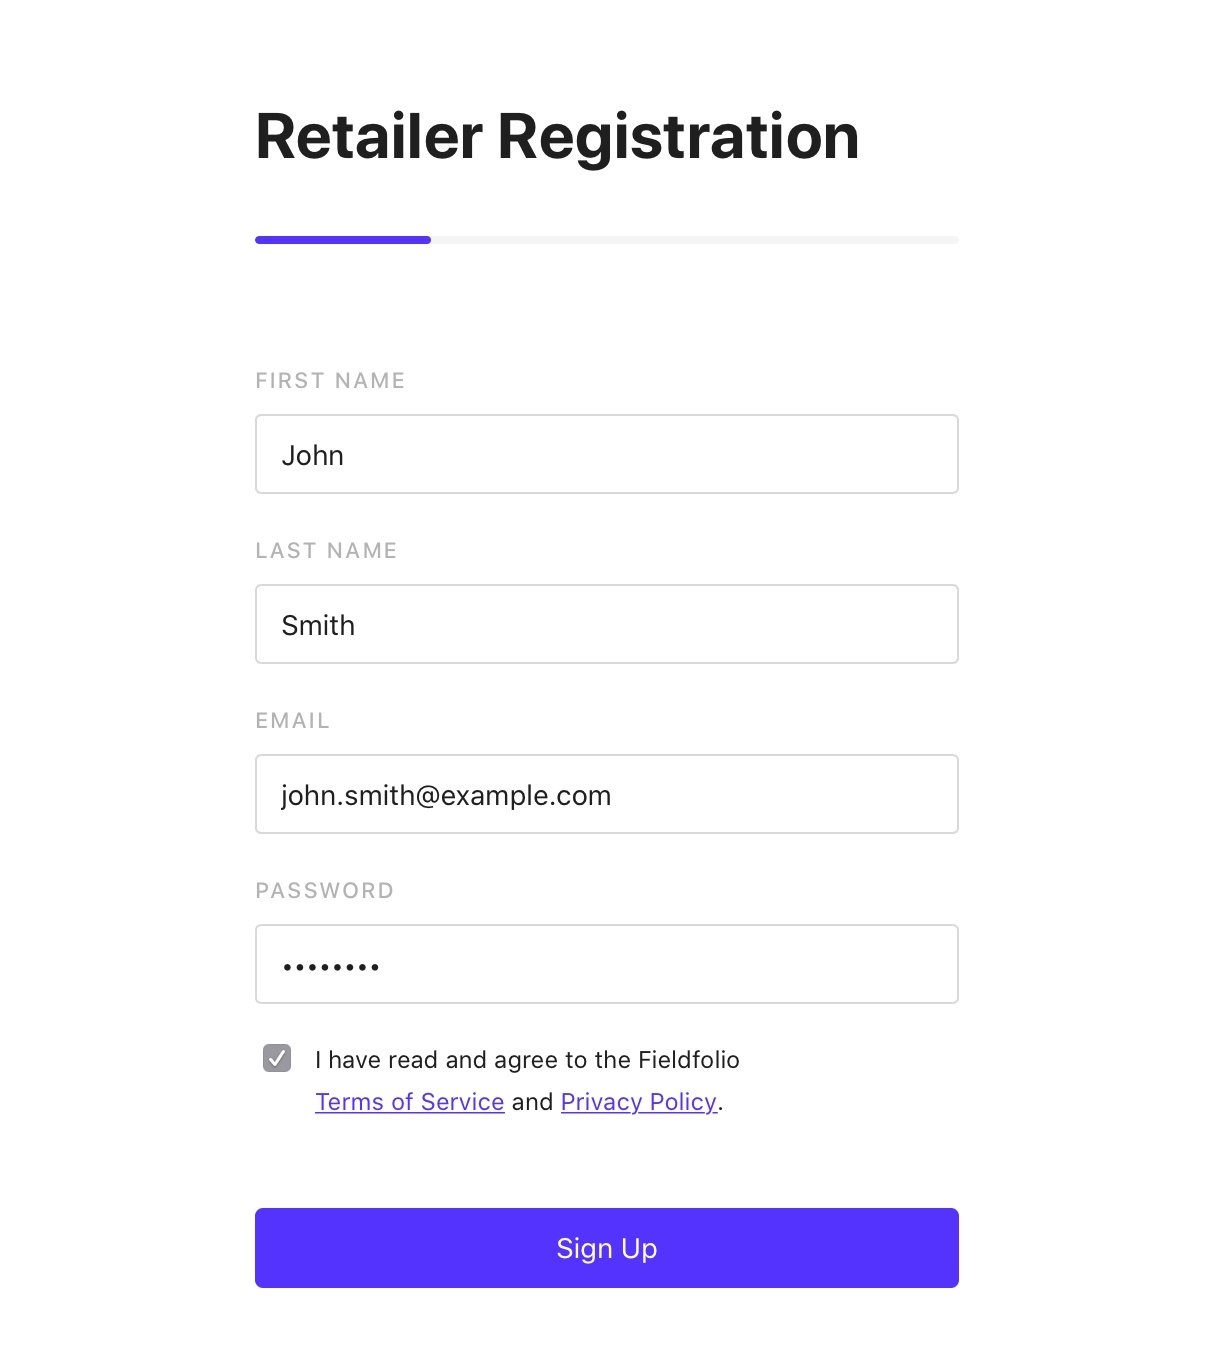 Retailer registration screenshot - signup